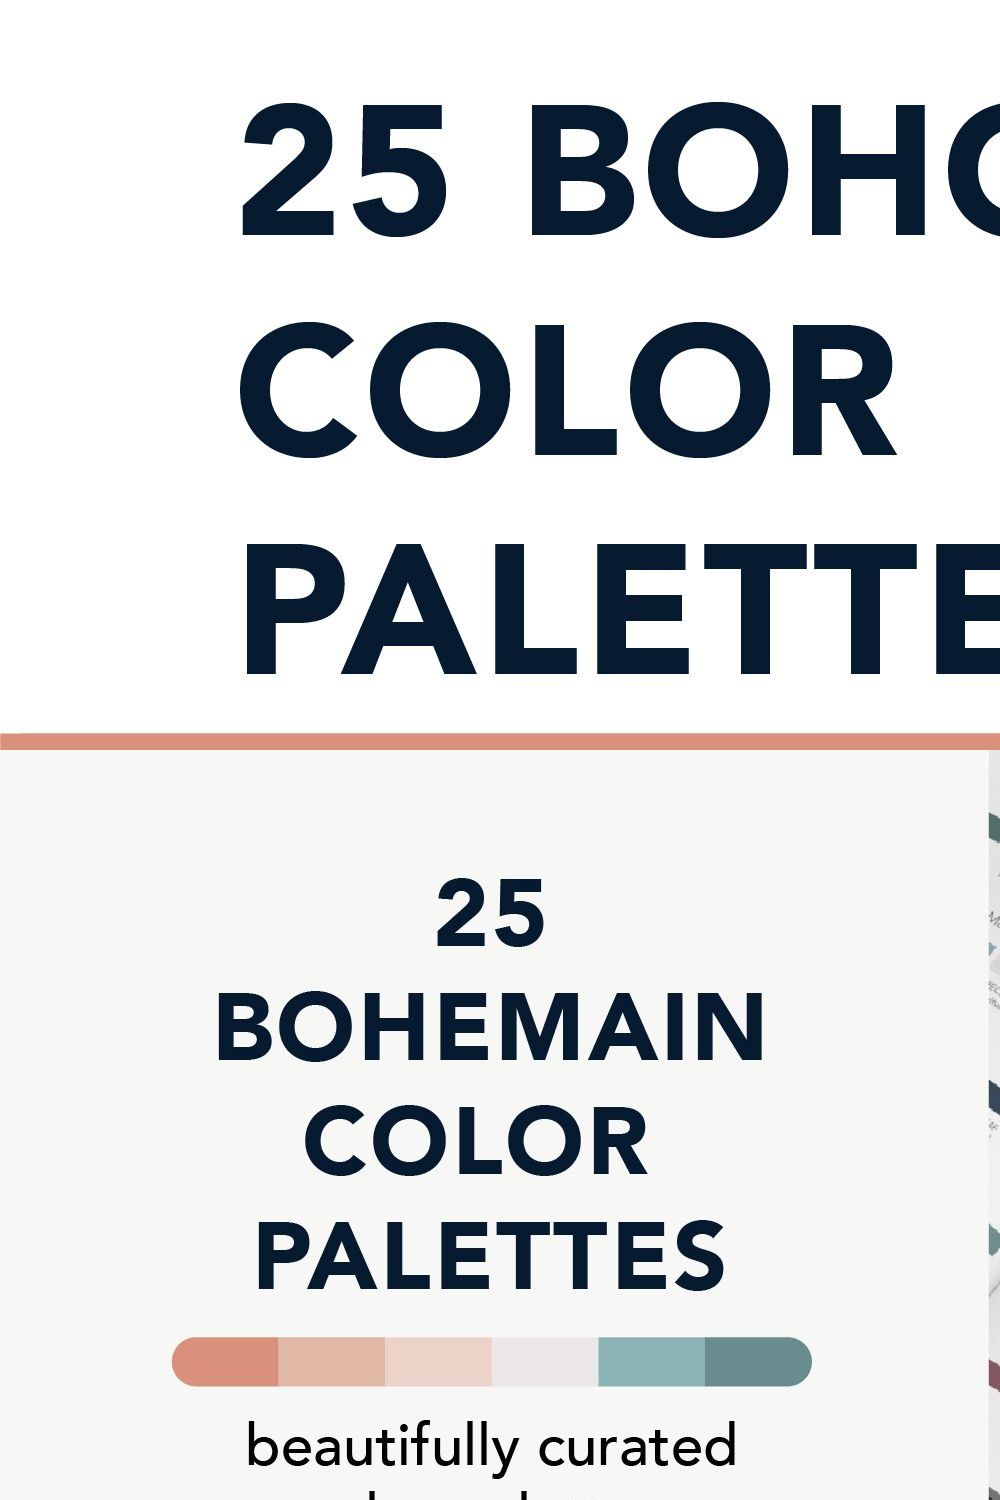 25 Boho Color Palettes pinterest preview image.